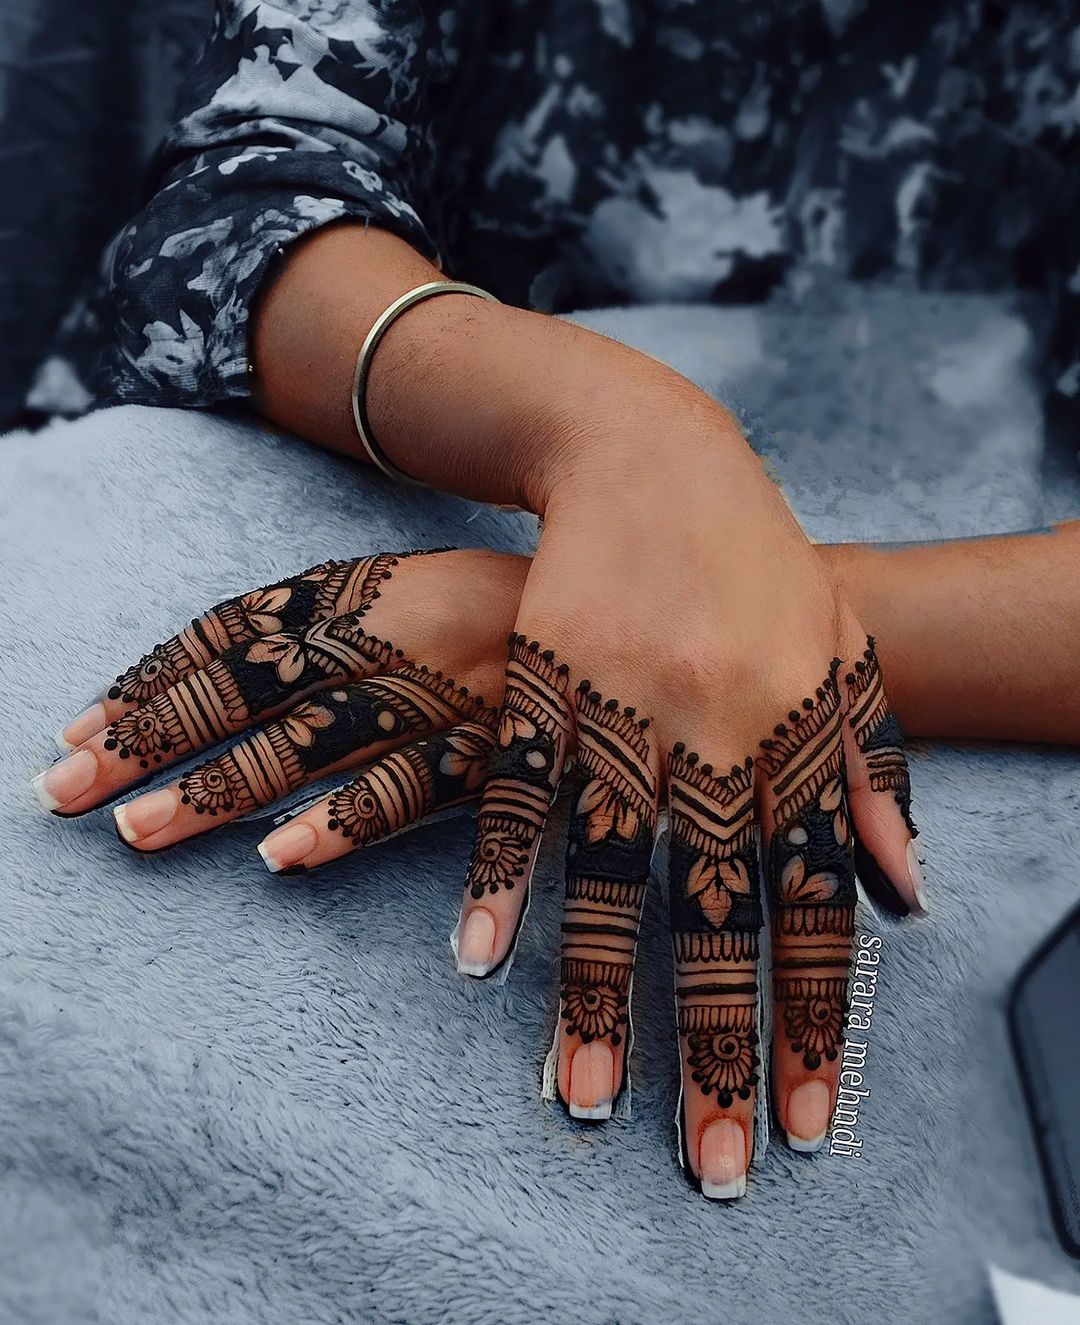 Finger Mehndi Designs - Triangular Henna Pattern